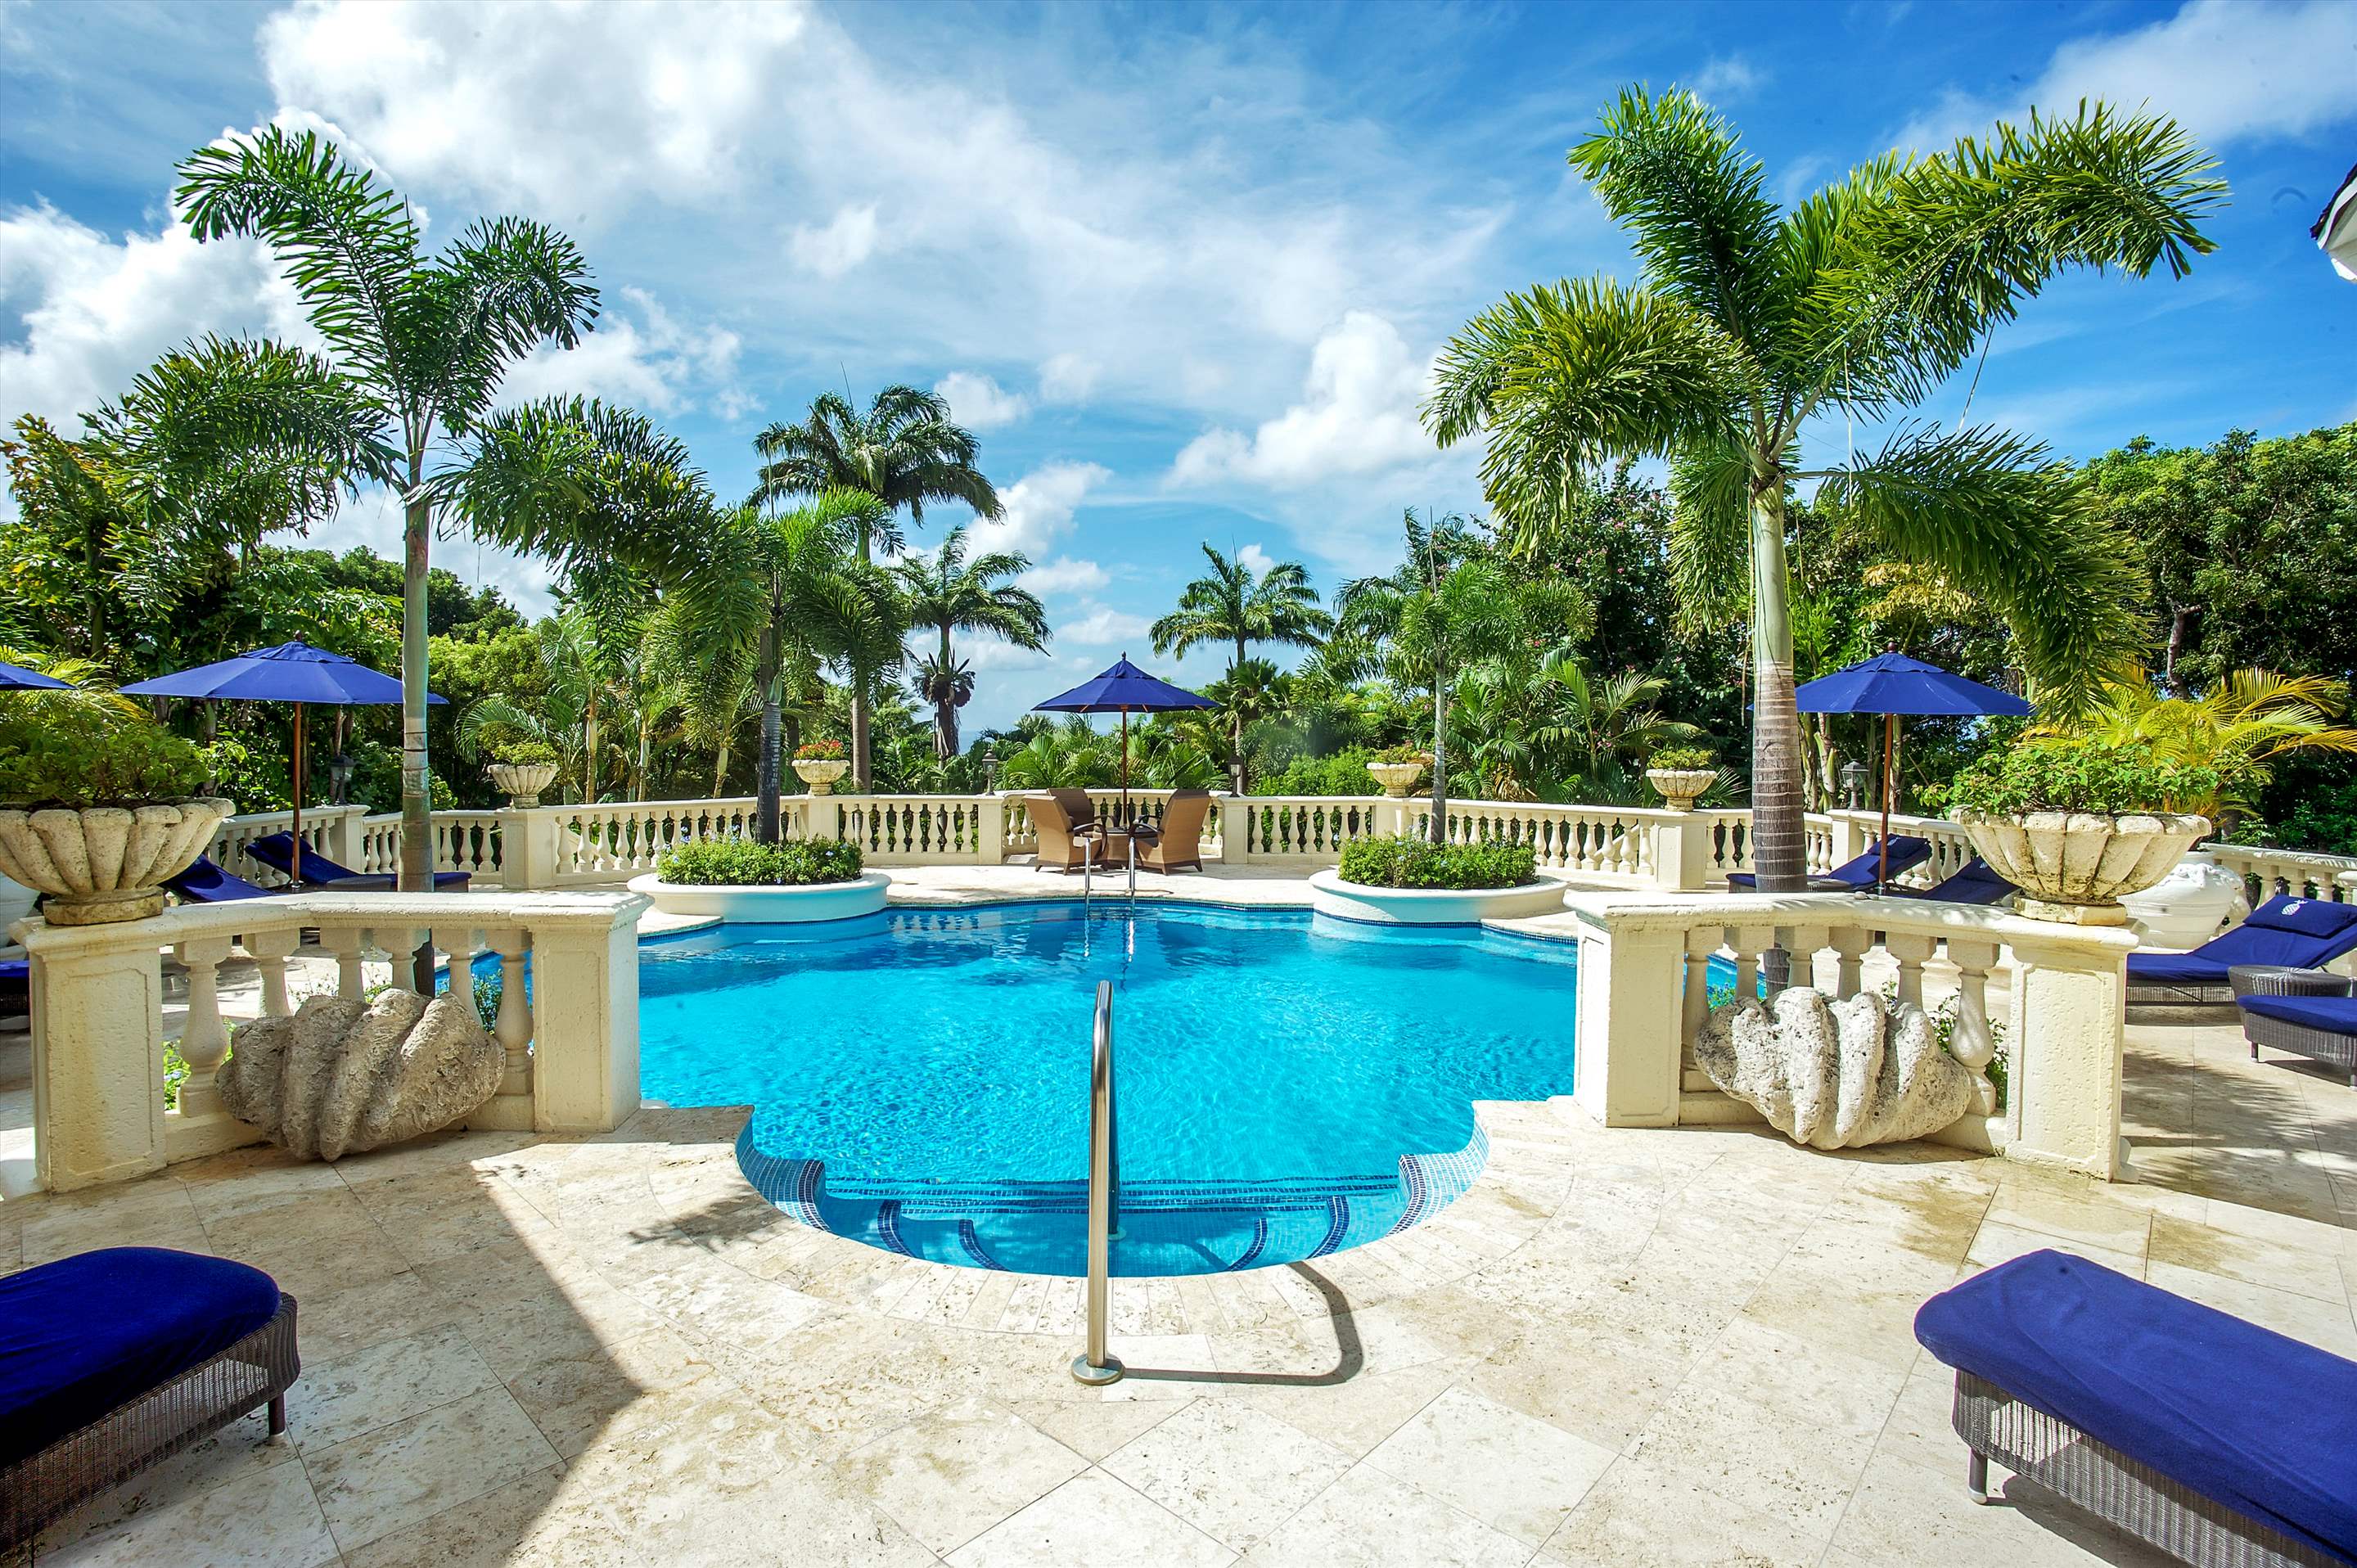 Plantation House, Royal Westmoreland, 4 bedroom, 4 bedroom villa in St. James & West Coast, Barbados Photo #2